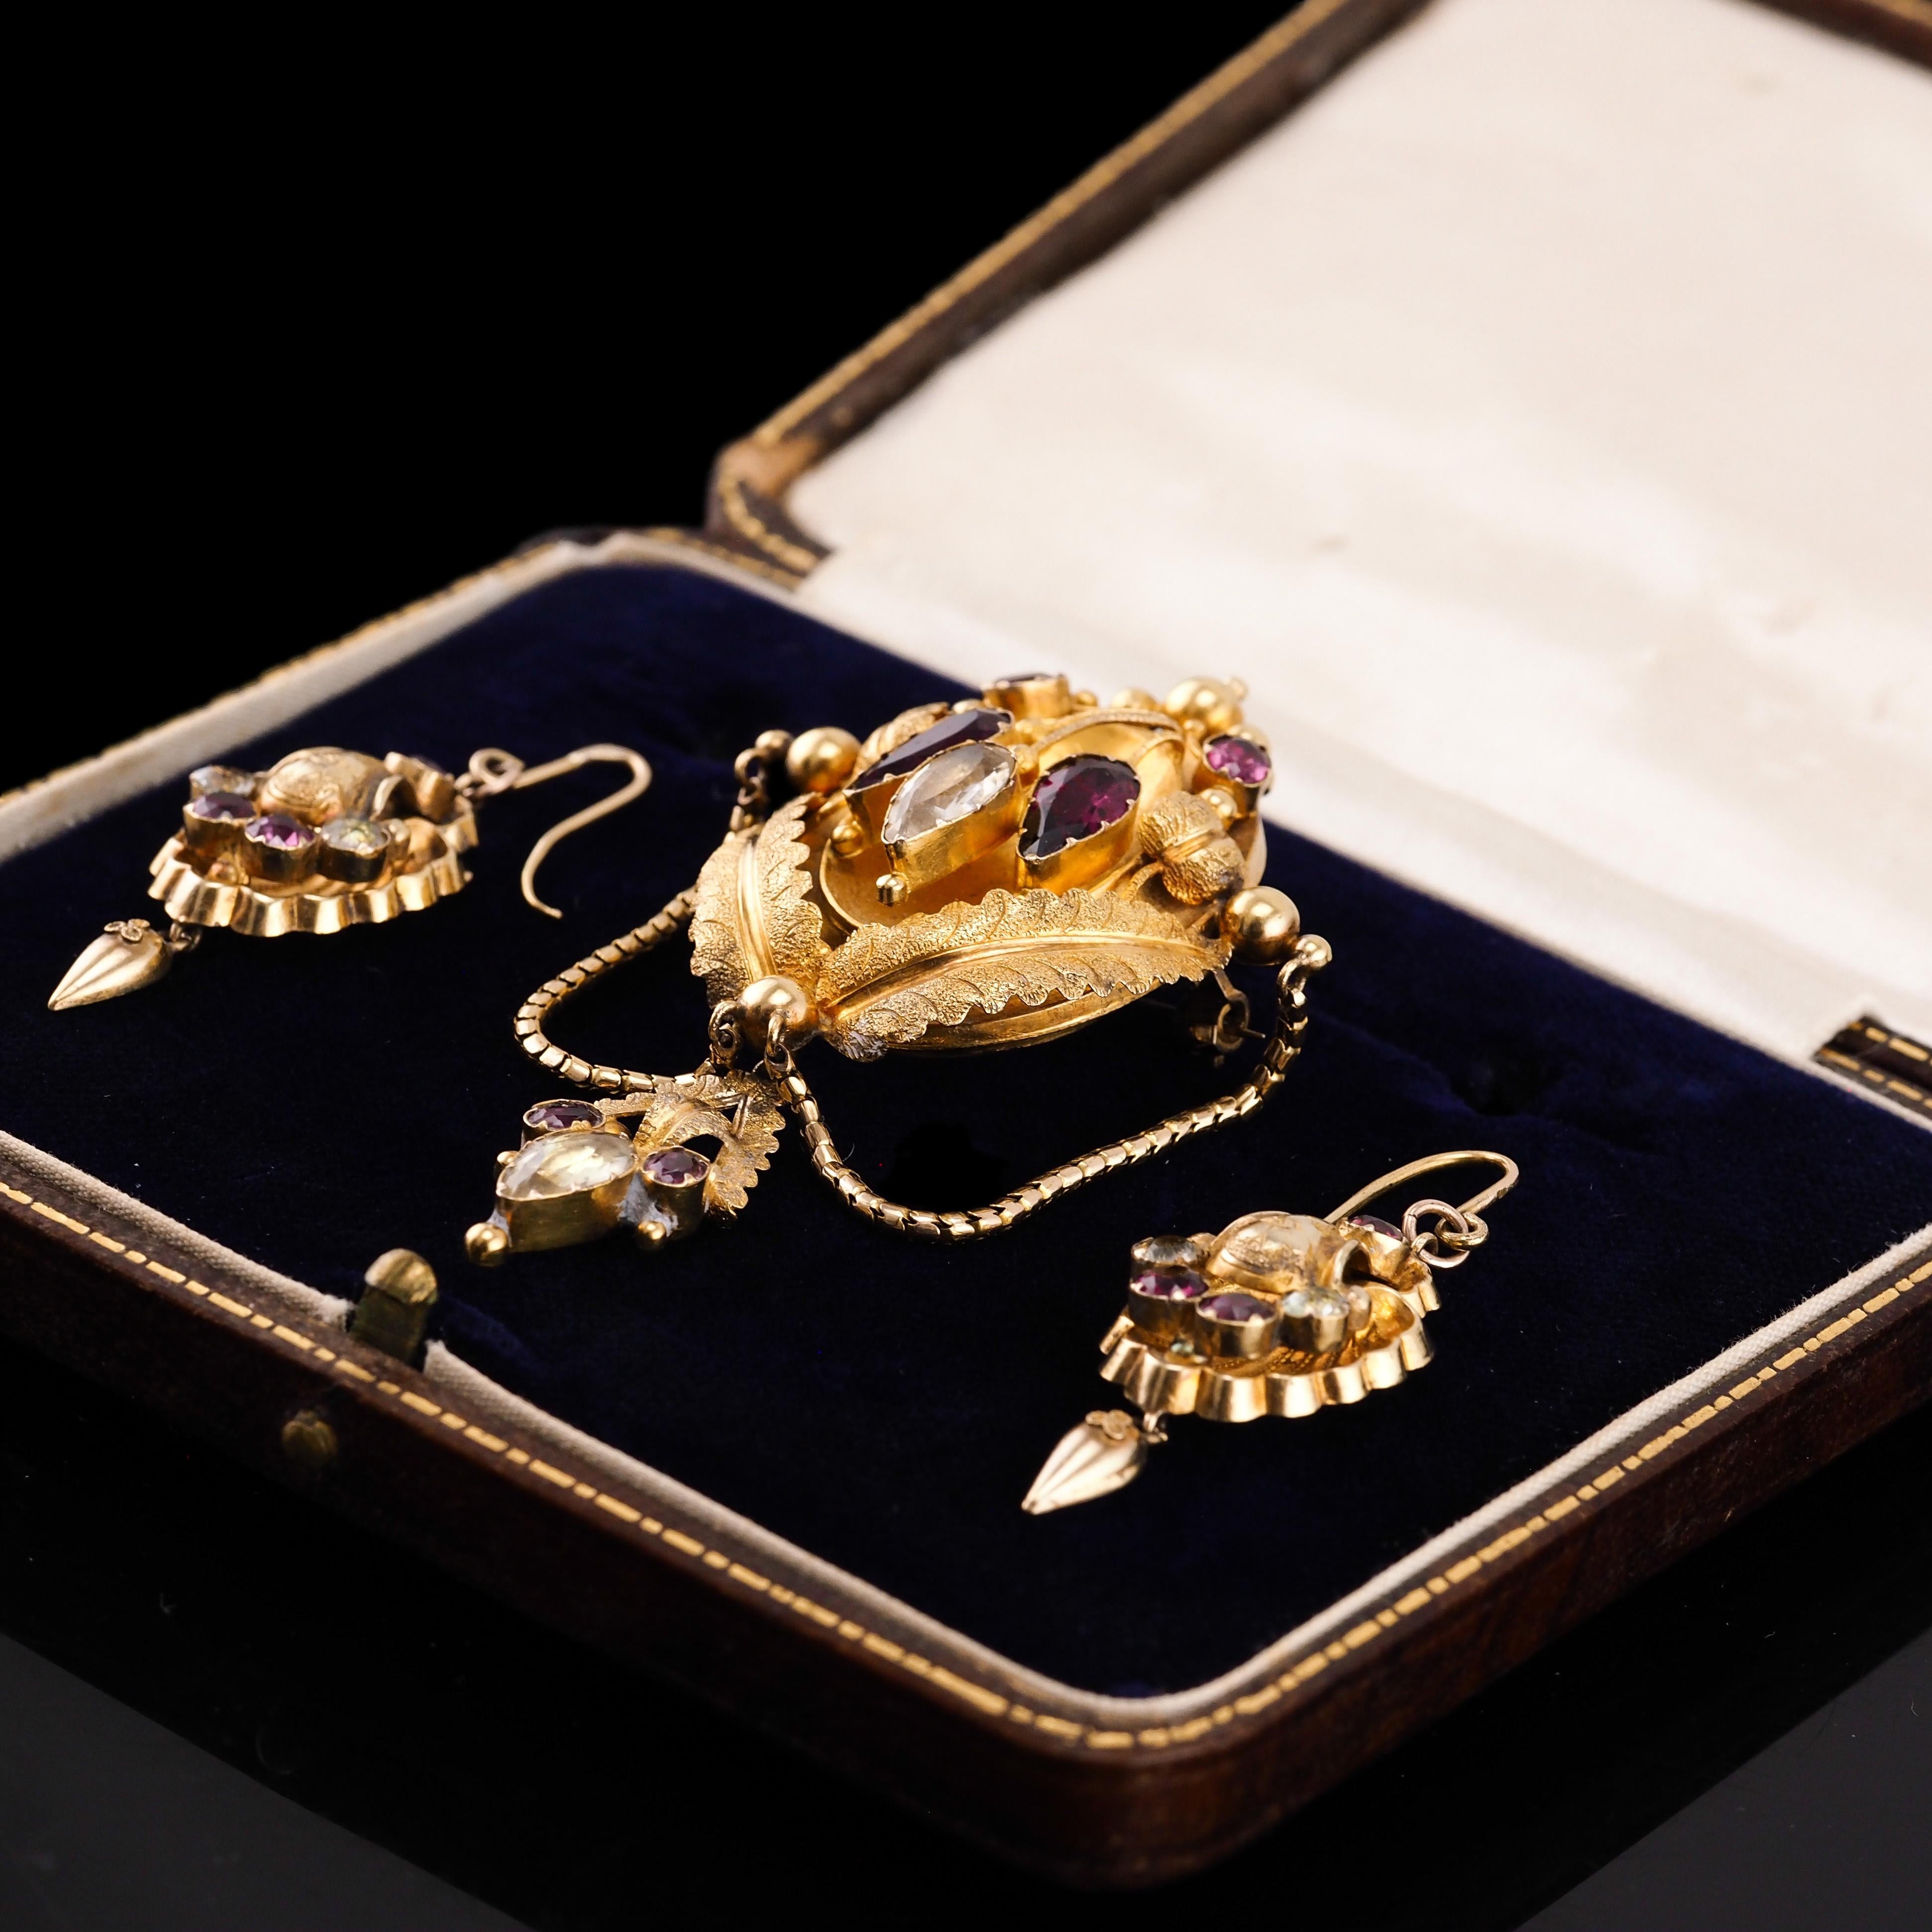 Antique 18K Gold Brooch Pendant & Earrings Garnet & Chrysoberyl - c.1870 For Sale 9